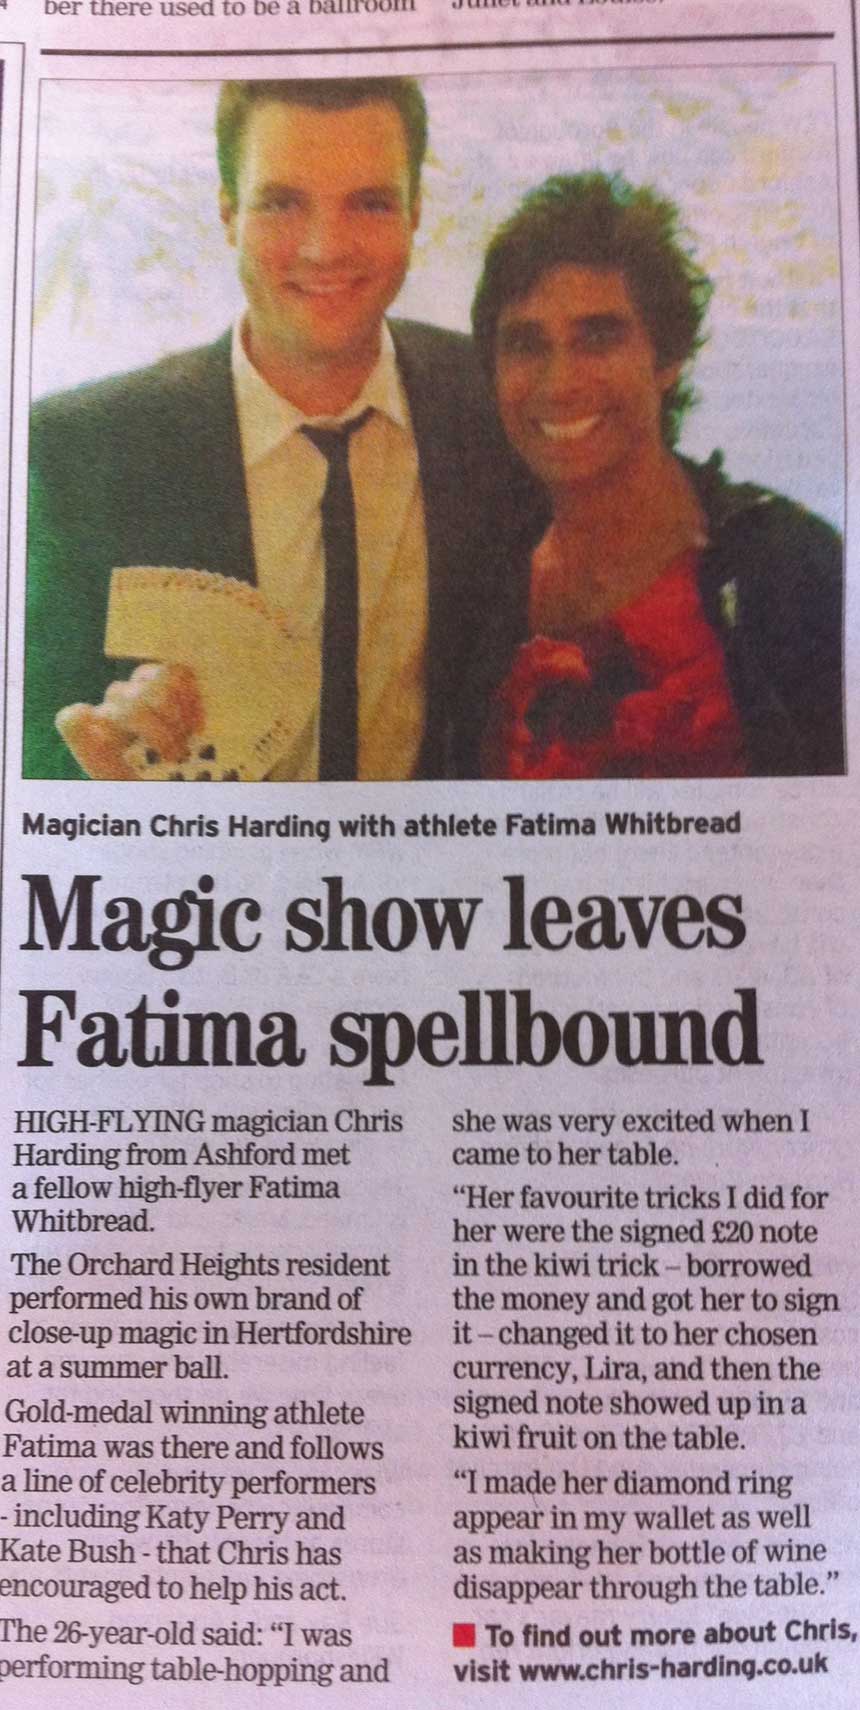 Fatima left spellbound!